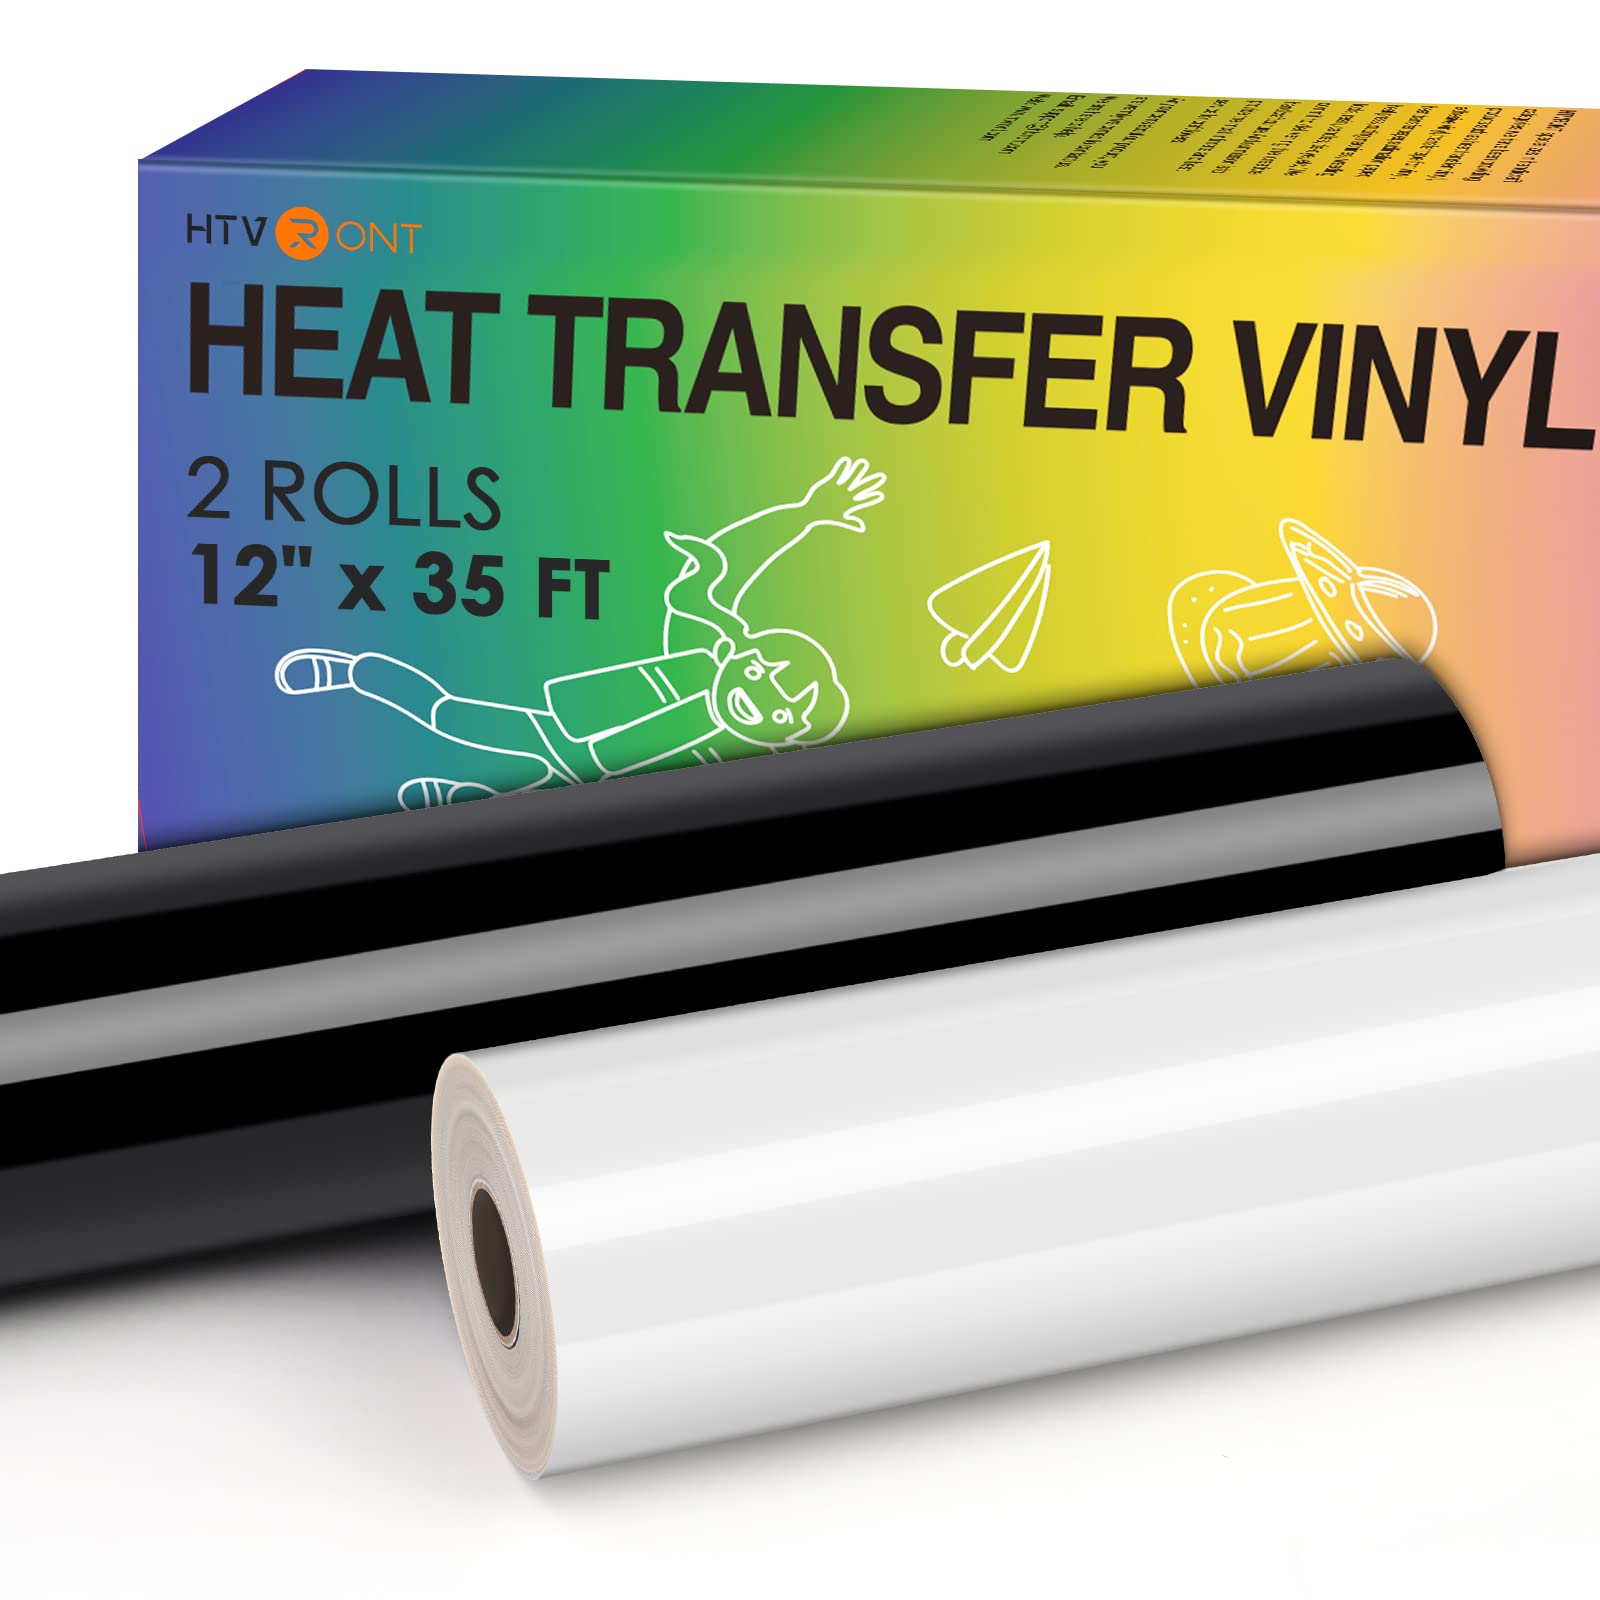 HTVRONT HTV Vinyl Rolls Black HTV and White Heat Transfer Vinyl